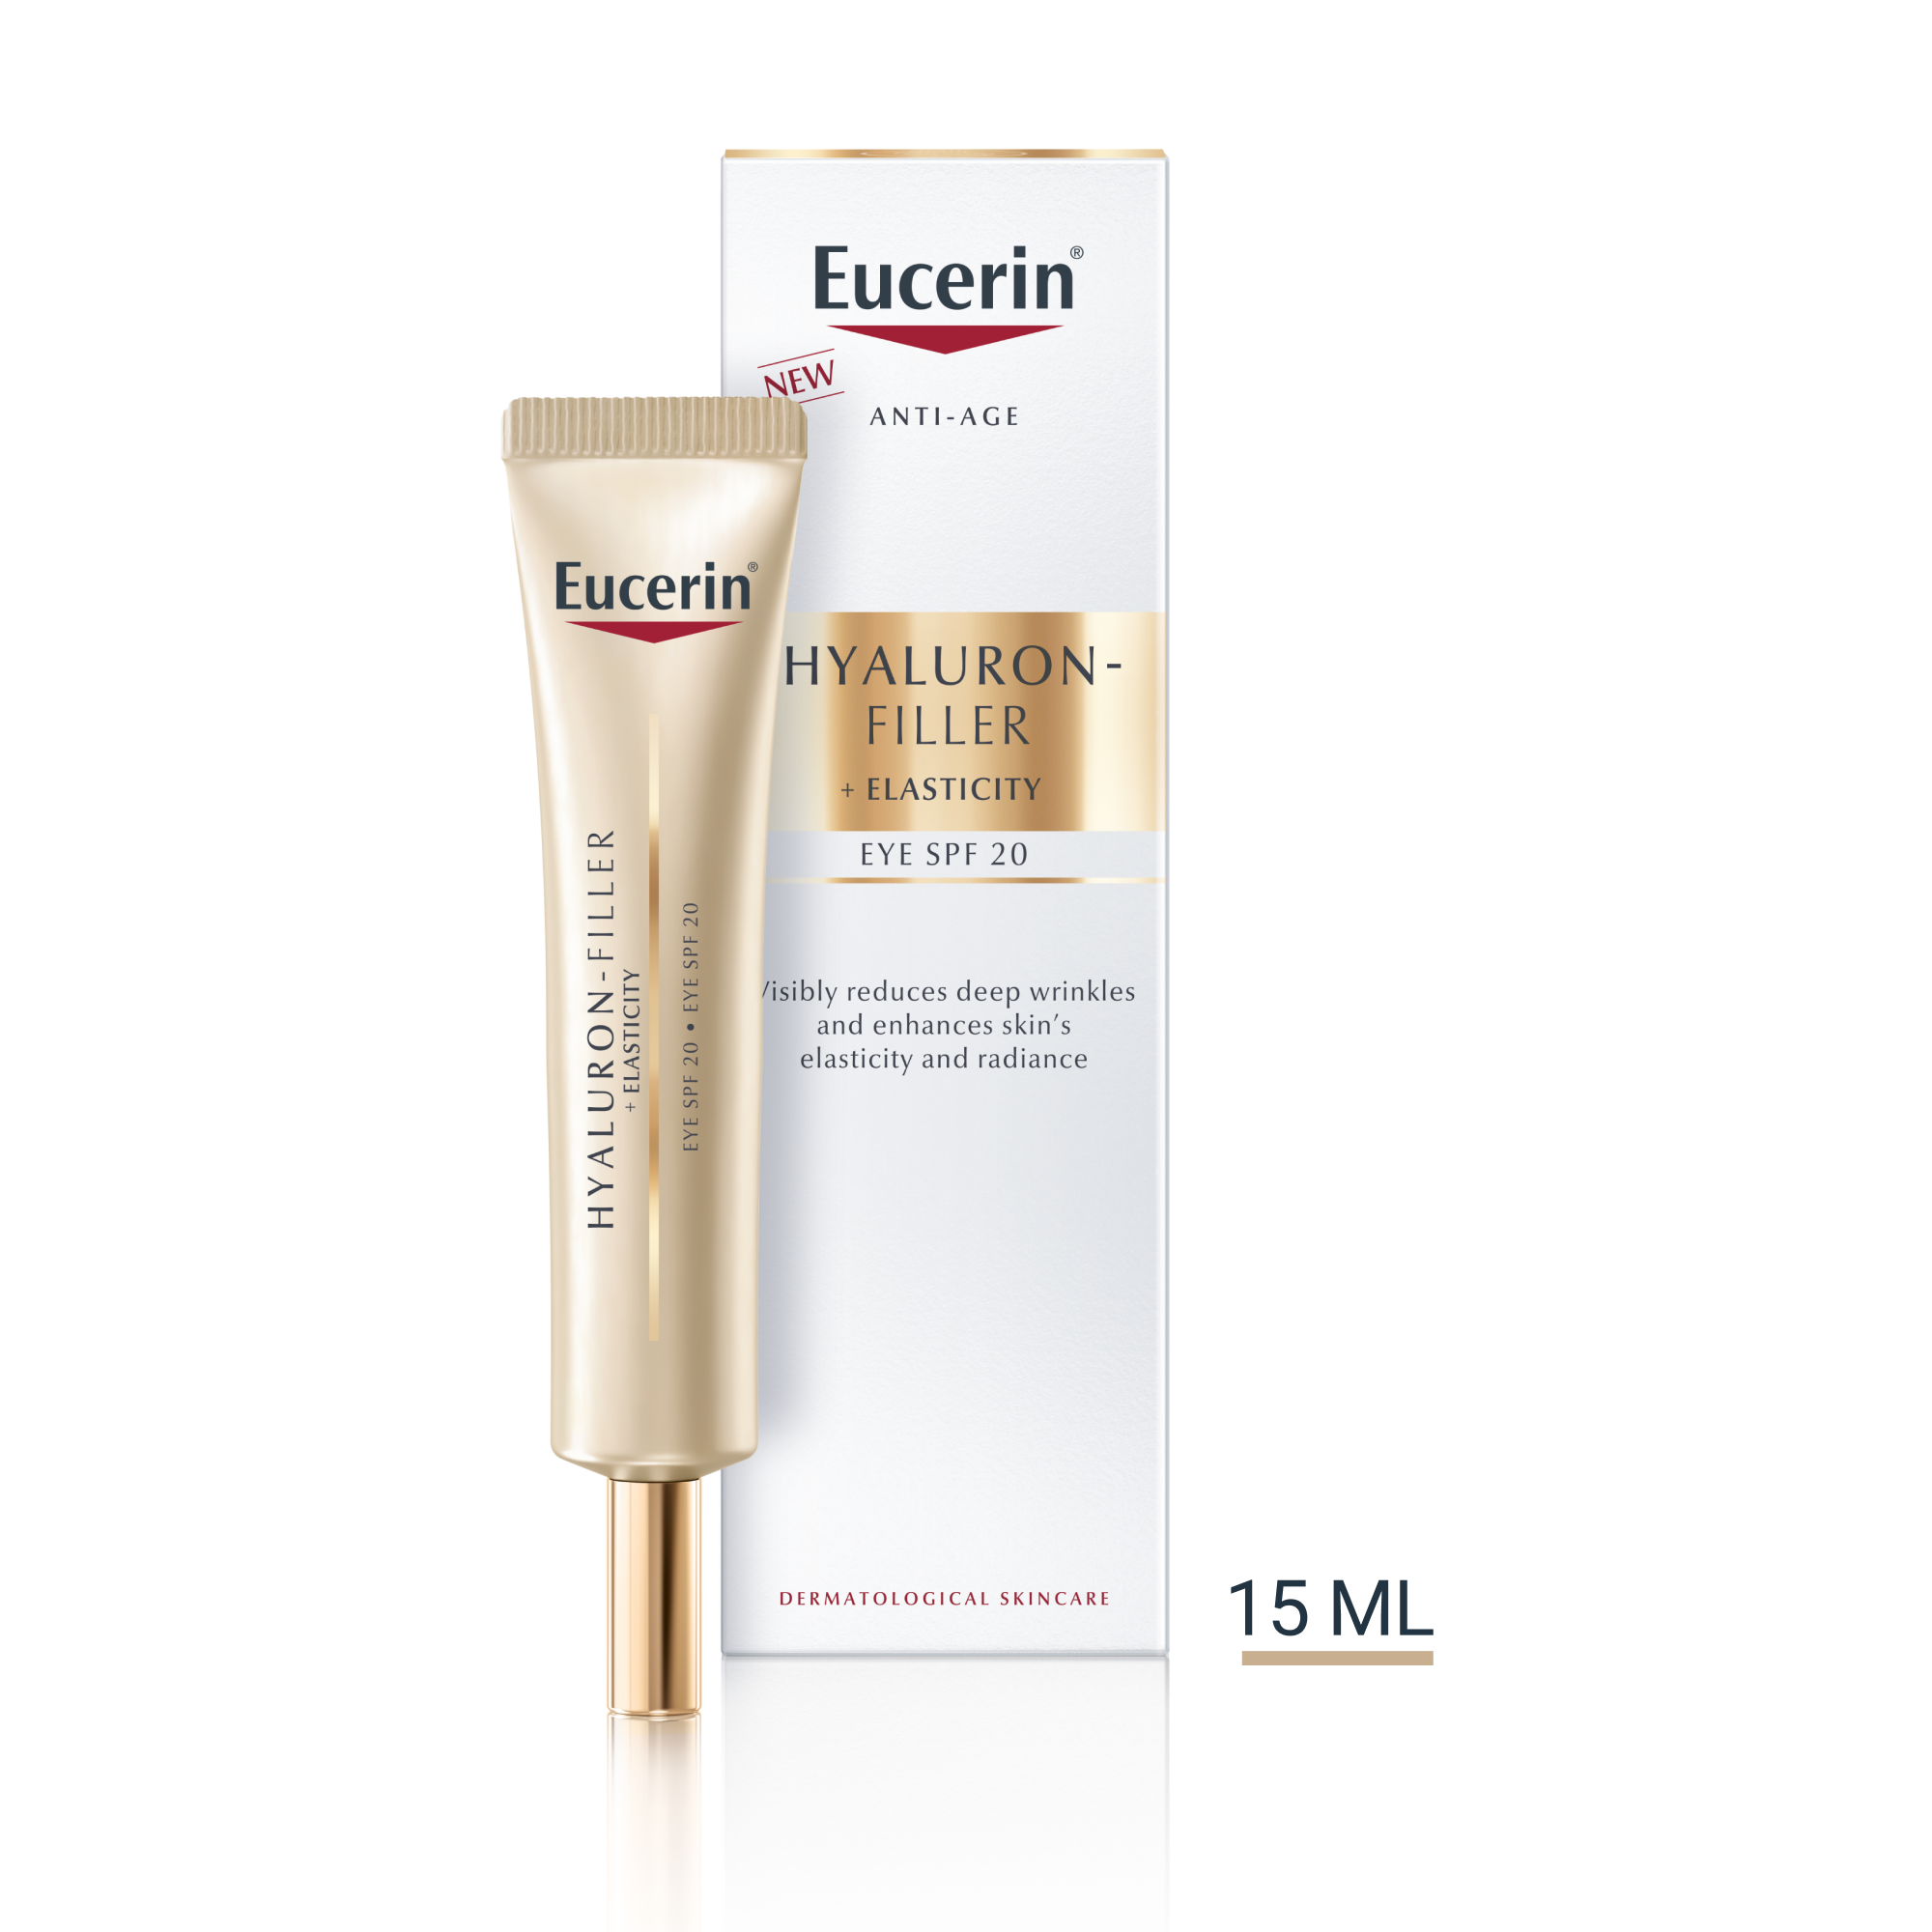 Produktbild med Eucerin Hyaluron-Filler + Elasticity Eye Cream SFP 20